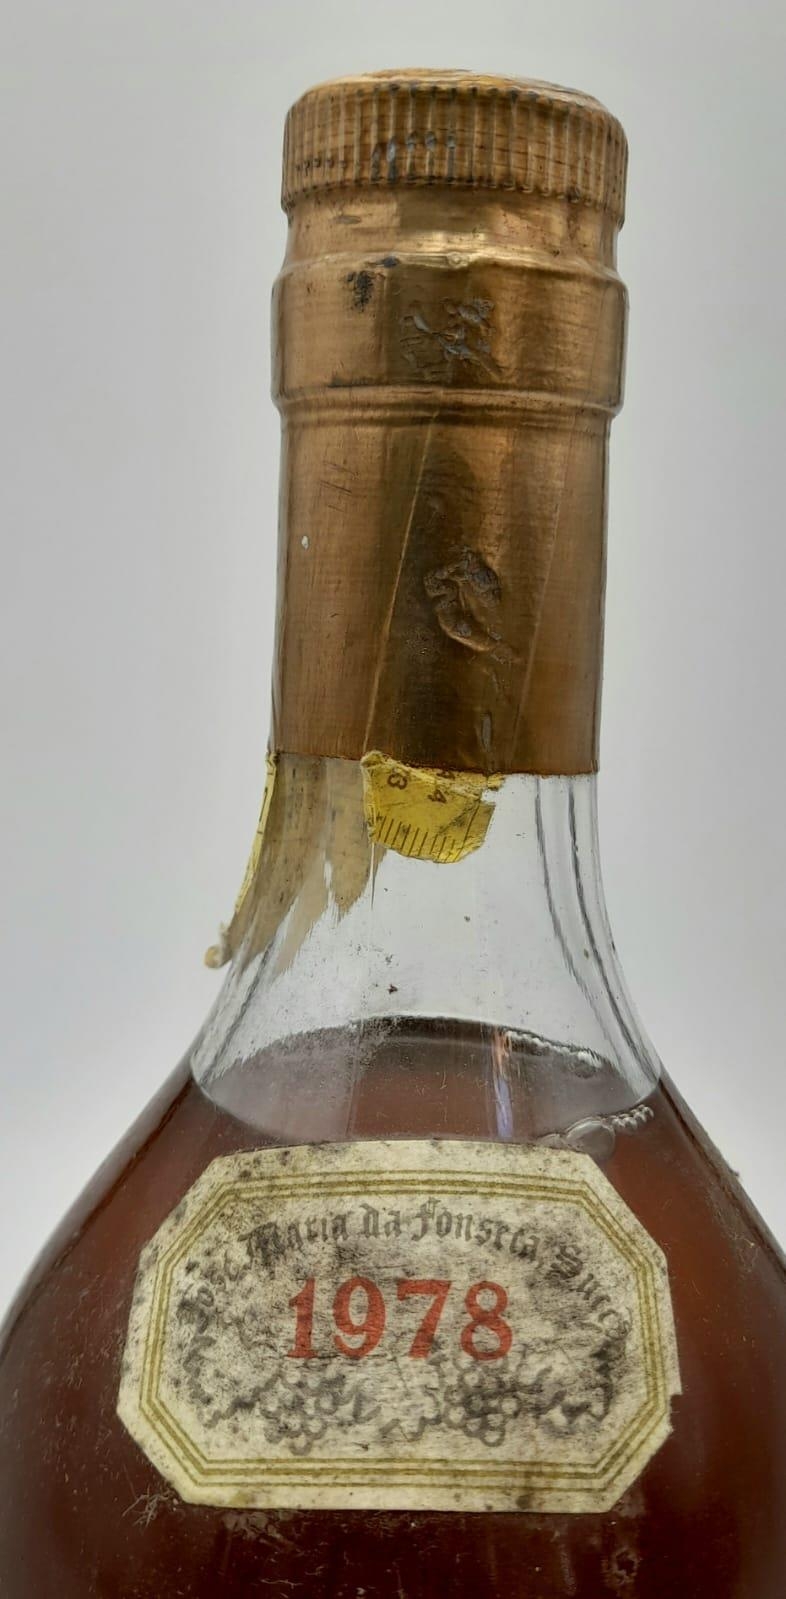 A bottle of 1978 Setúbal Moscatel Sweet Wine. - Image 3 of 4